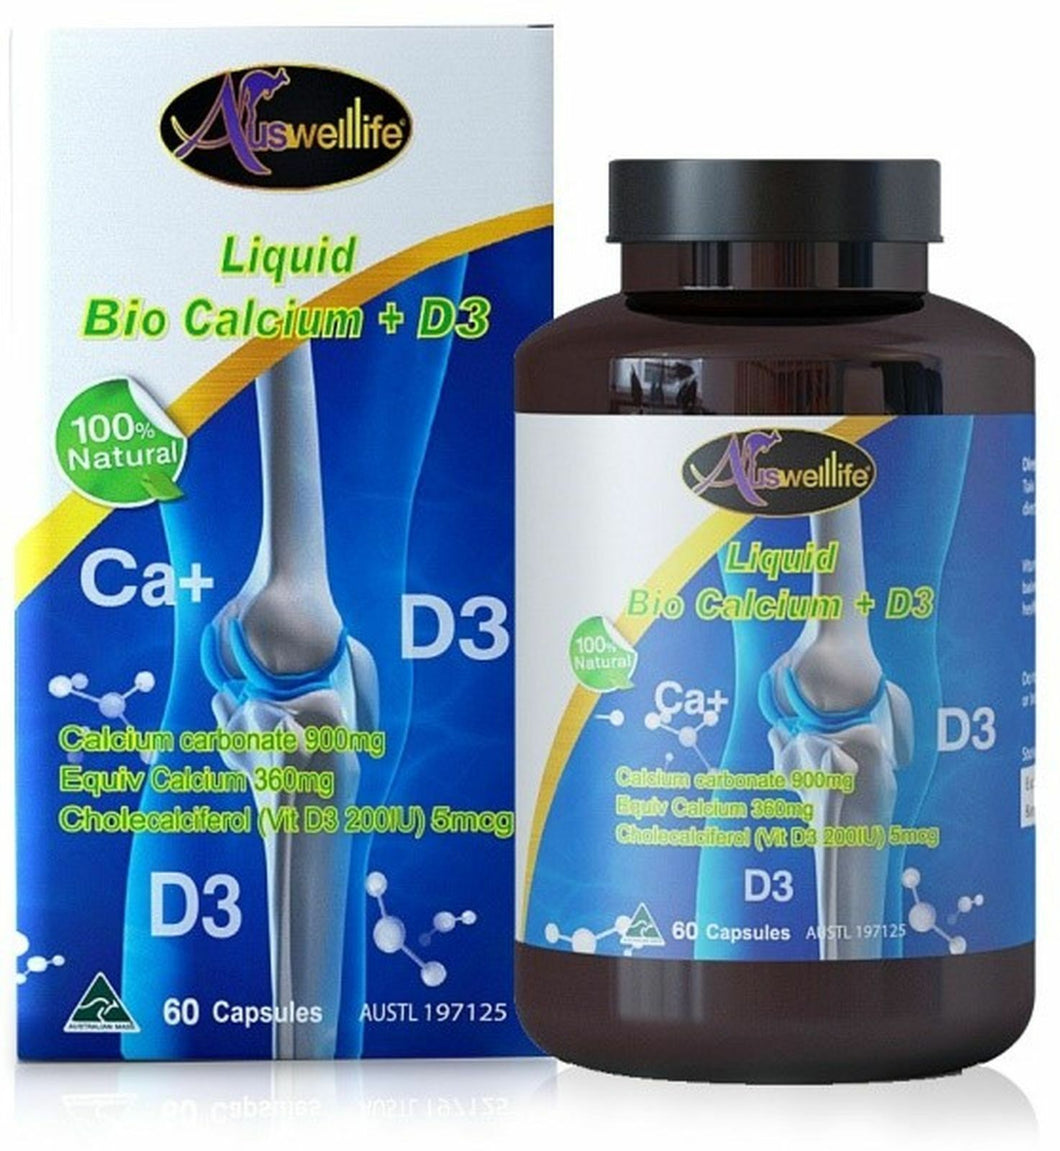 Auswelllife Liquid Calcium 900 Mg With Vitamin D3 60 Capsules Increase Calcium